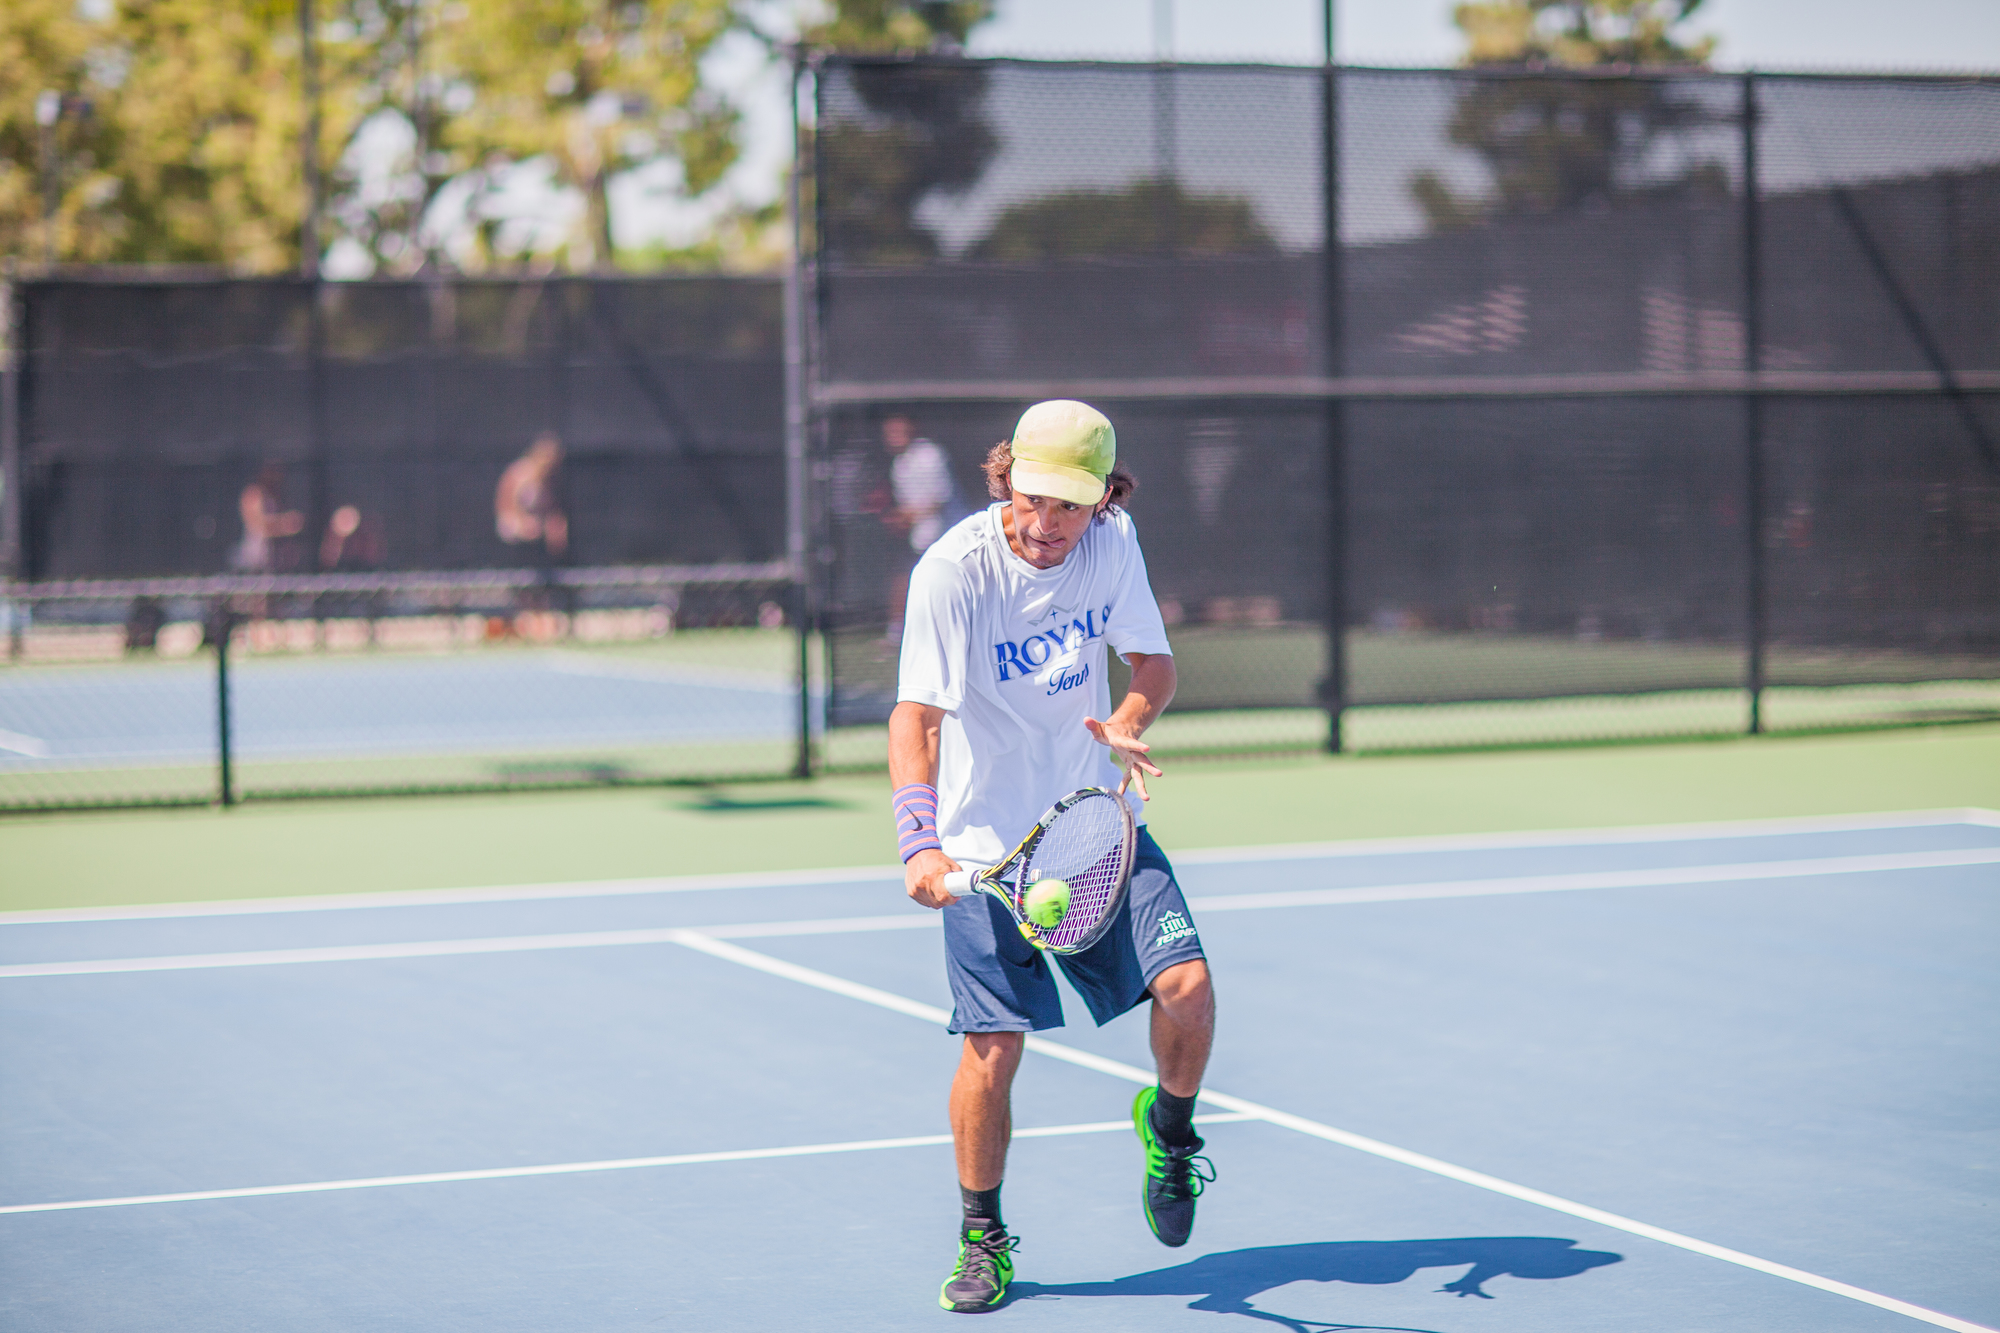 Mauricio M. teaches tennis lessons in Fullerton, CA